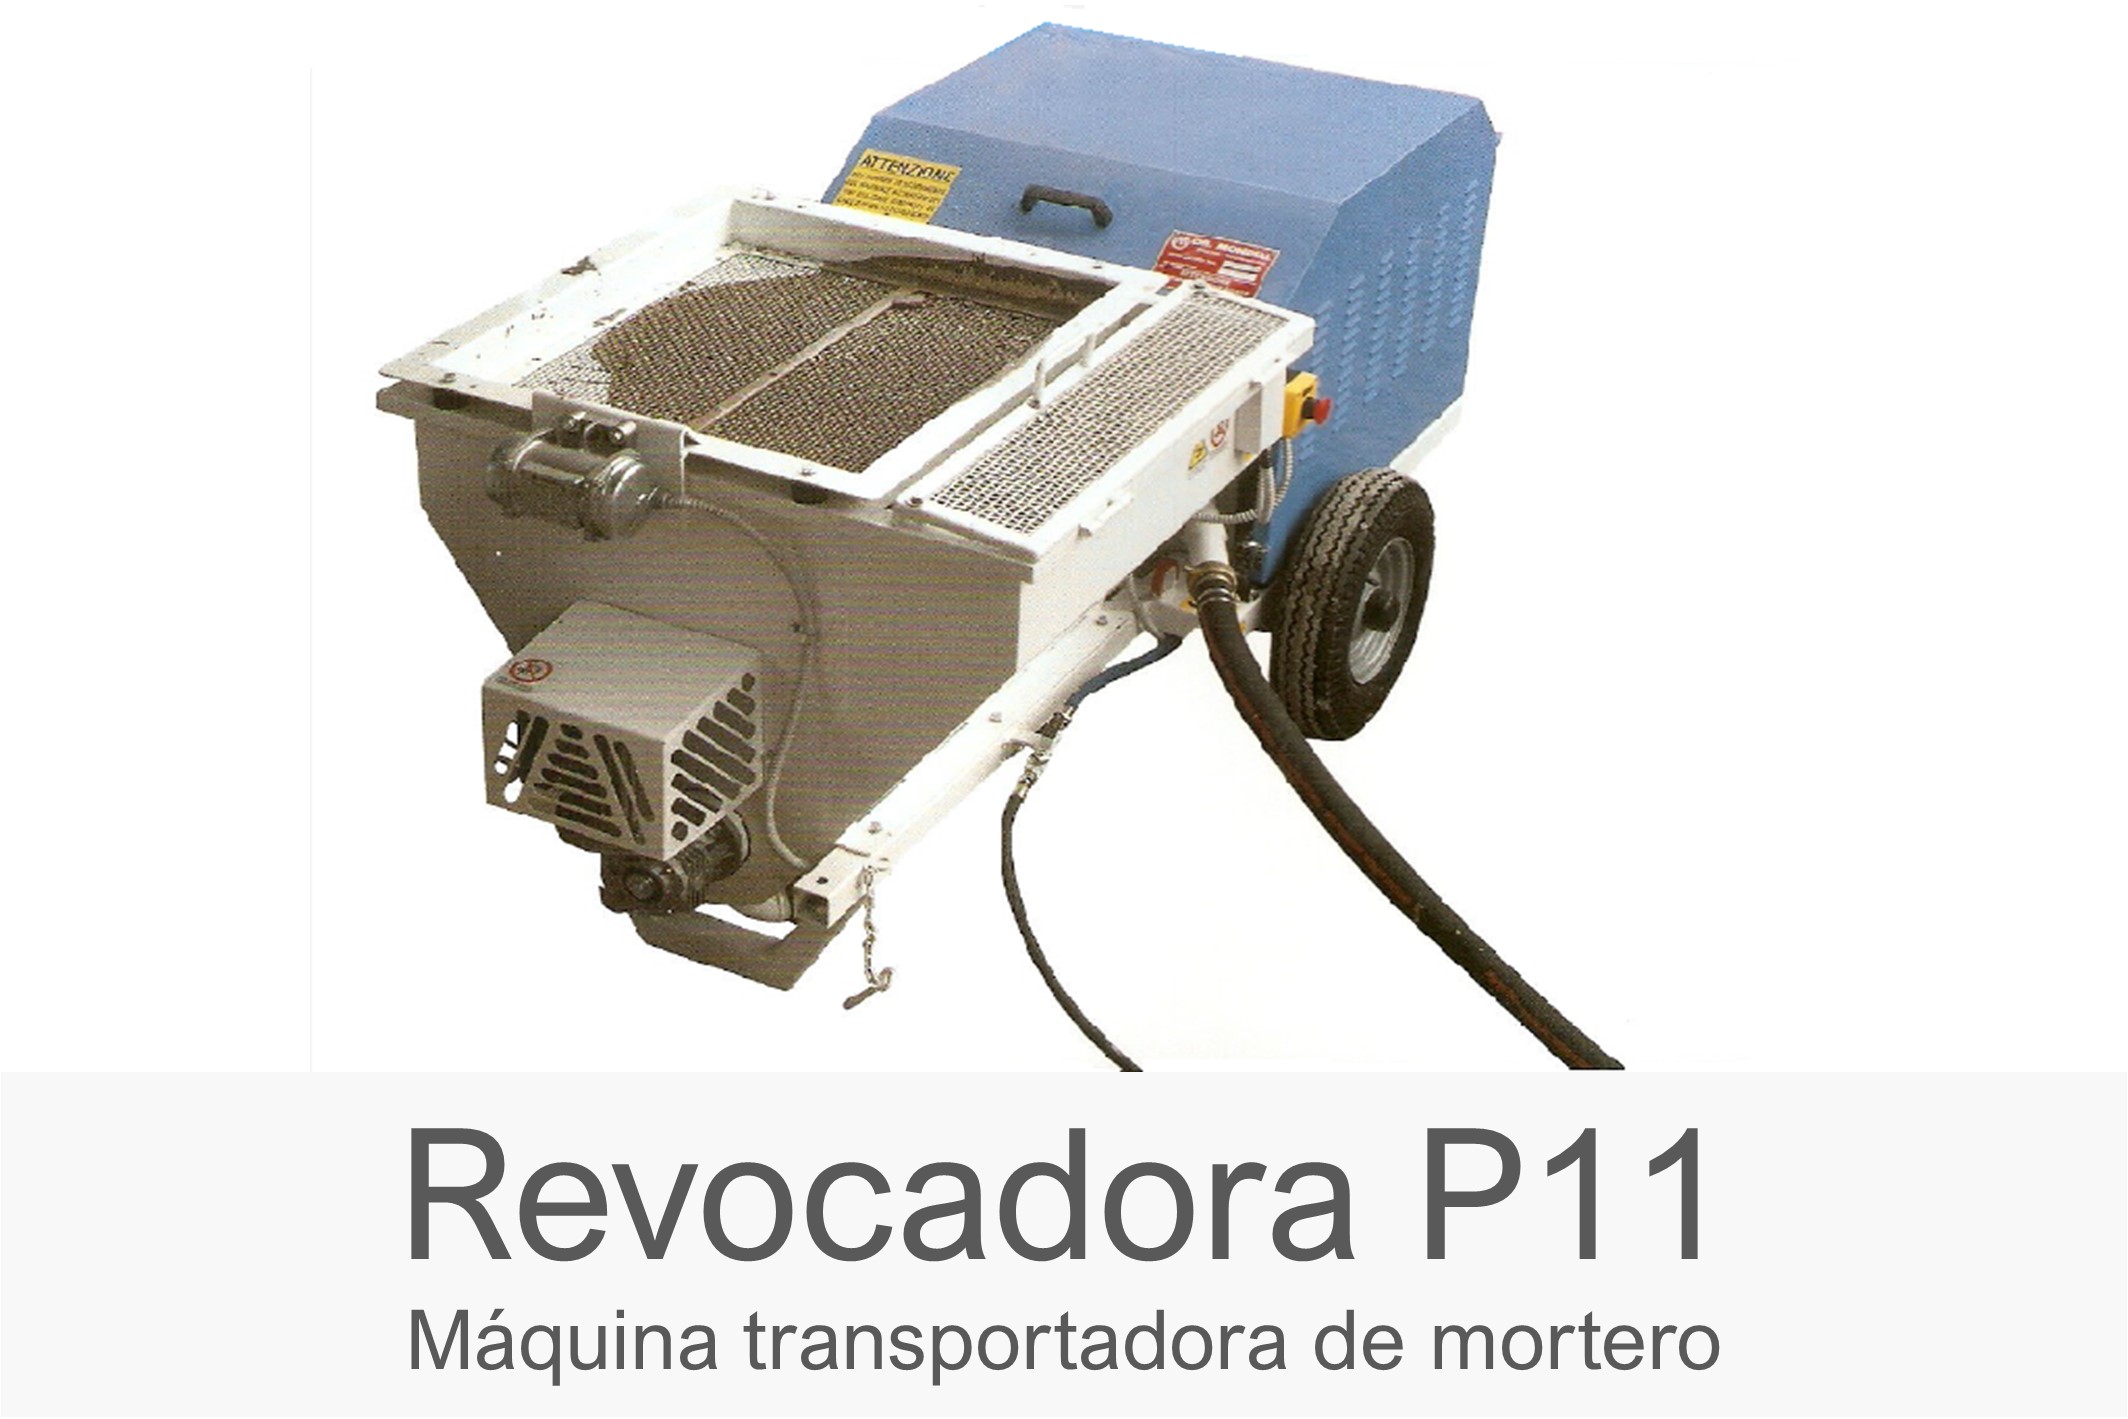 Revocadora P11 - Máquina transportadora de mortero